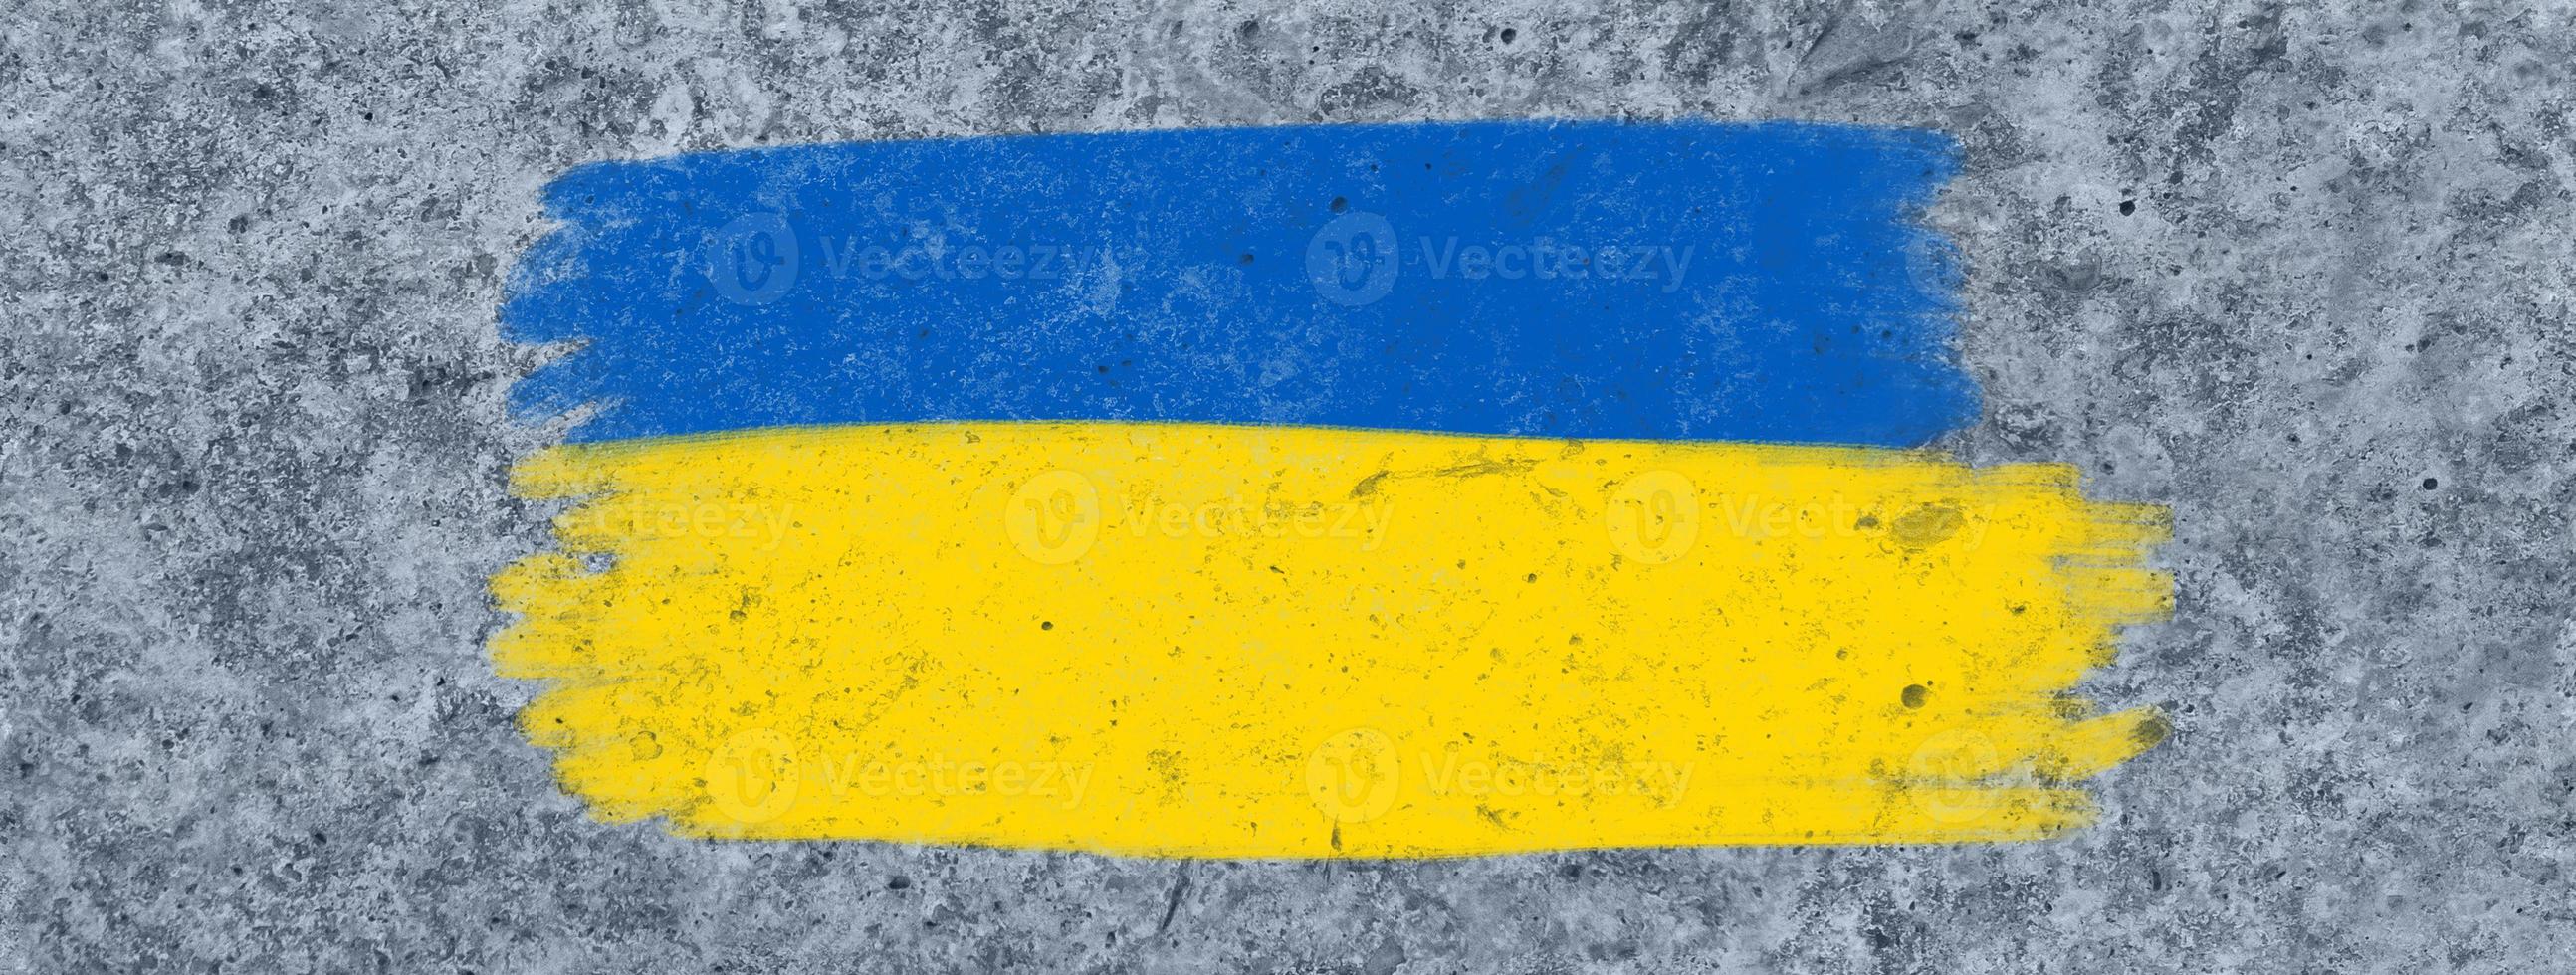 bandiera dell'ucraina su un muro di cemento foto